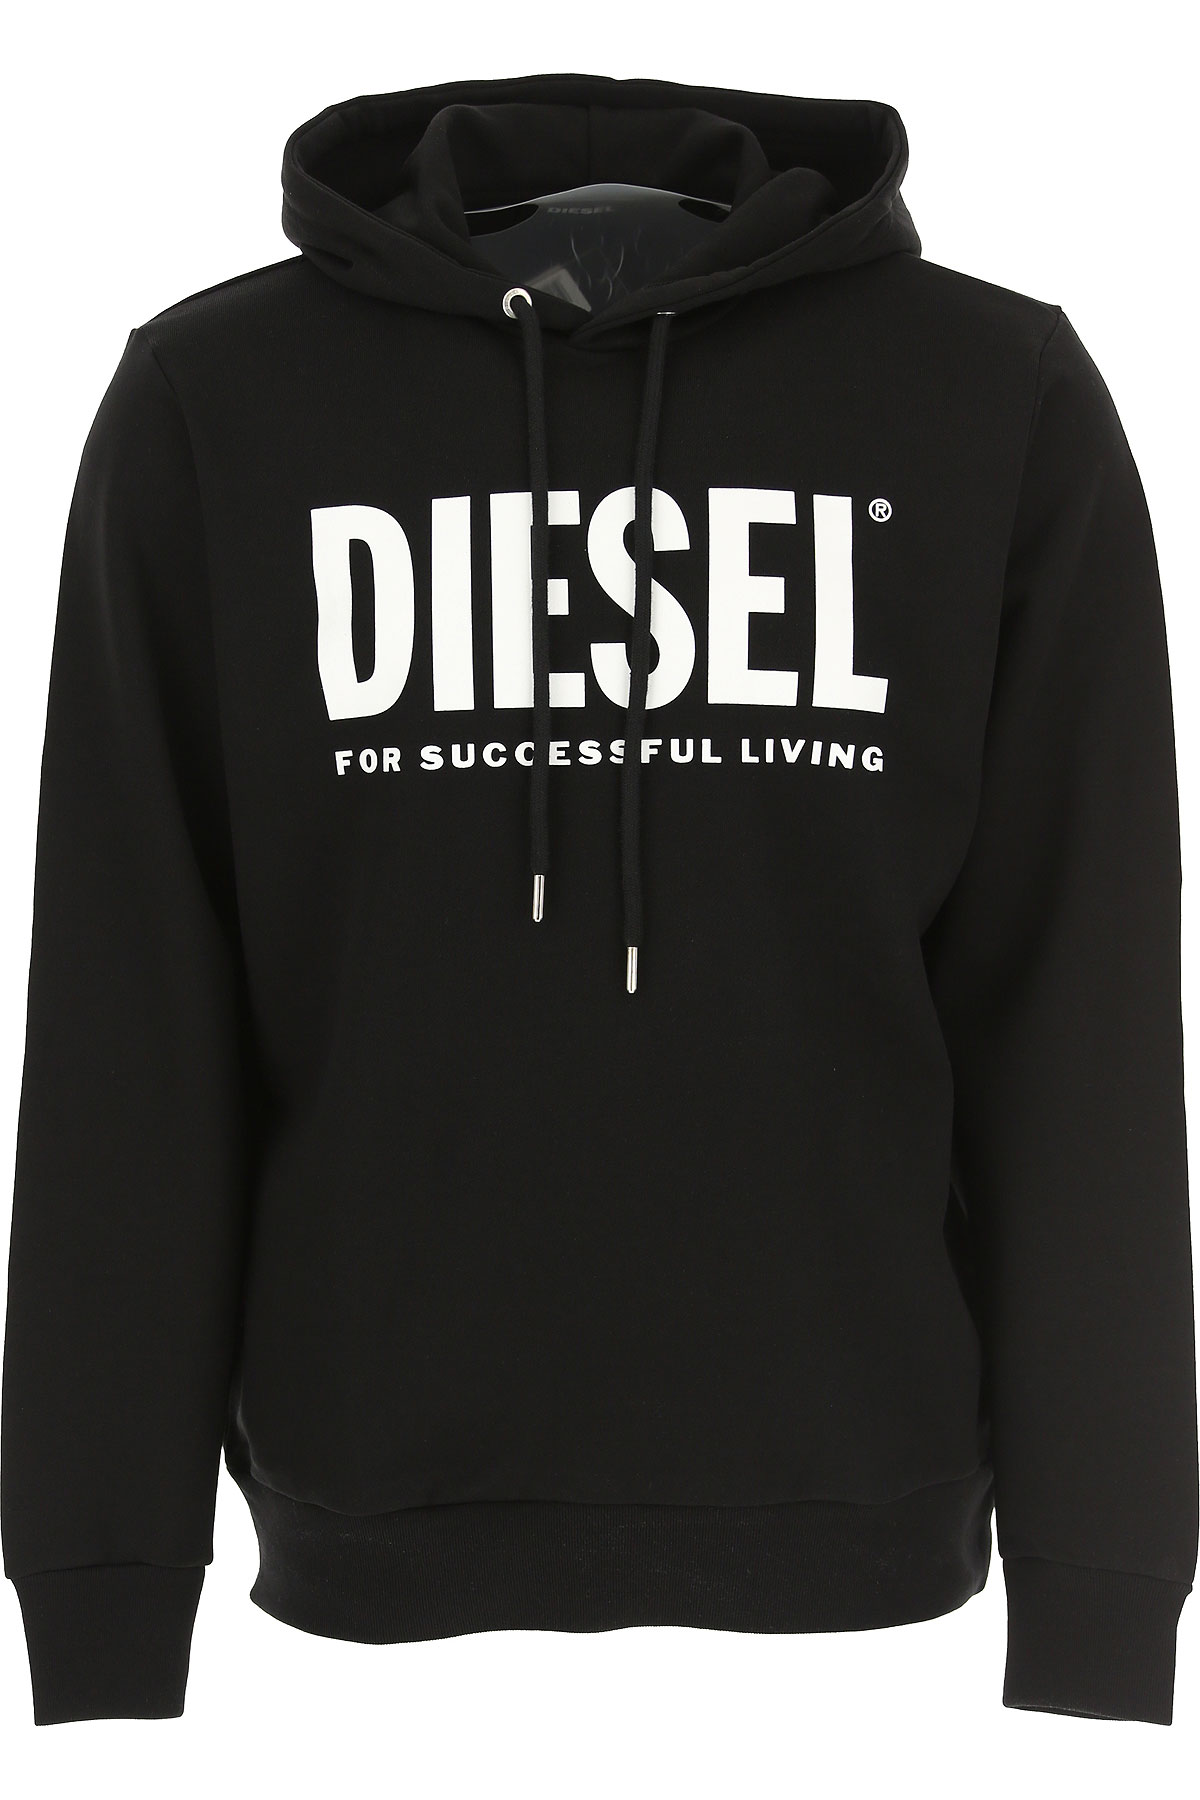 Diesel Sweatshirt für Herren, Kapuzenpulli, Hoodie, Sweats Günstig im Sale, Schwarz, Baumwolle, 2017, L M XL